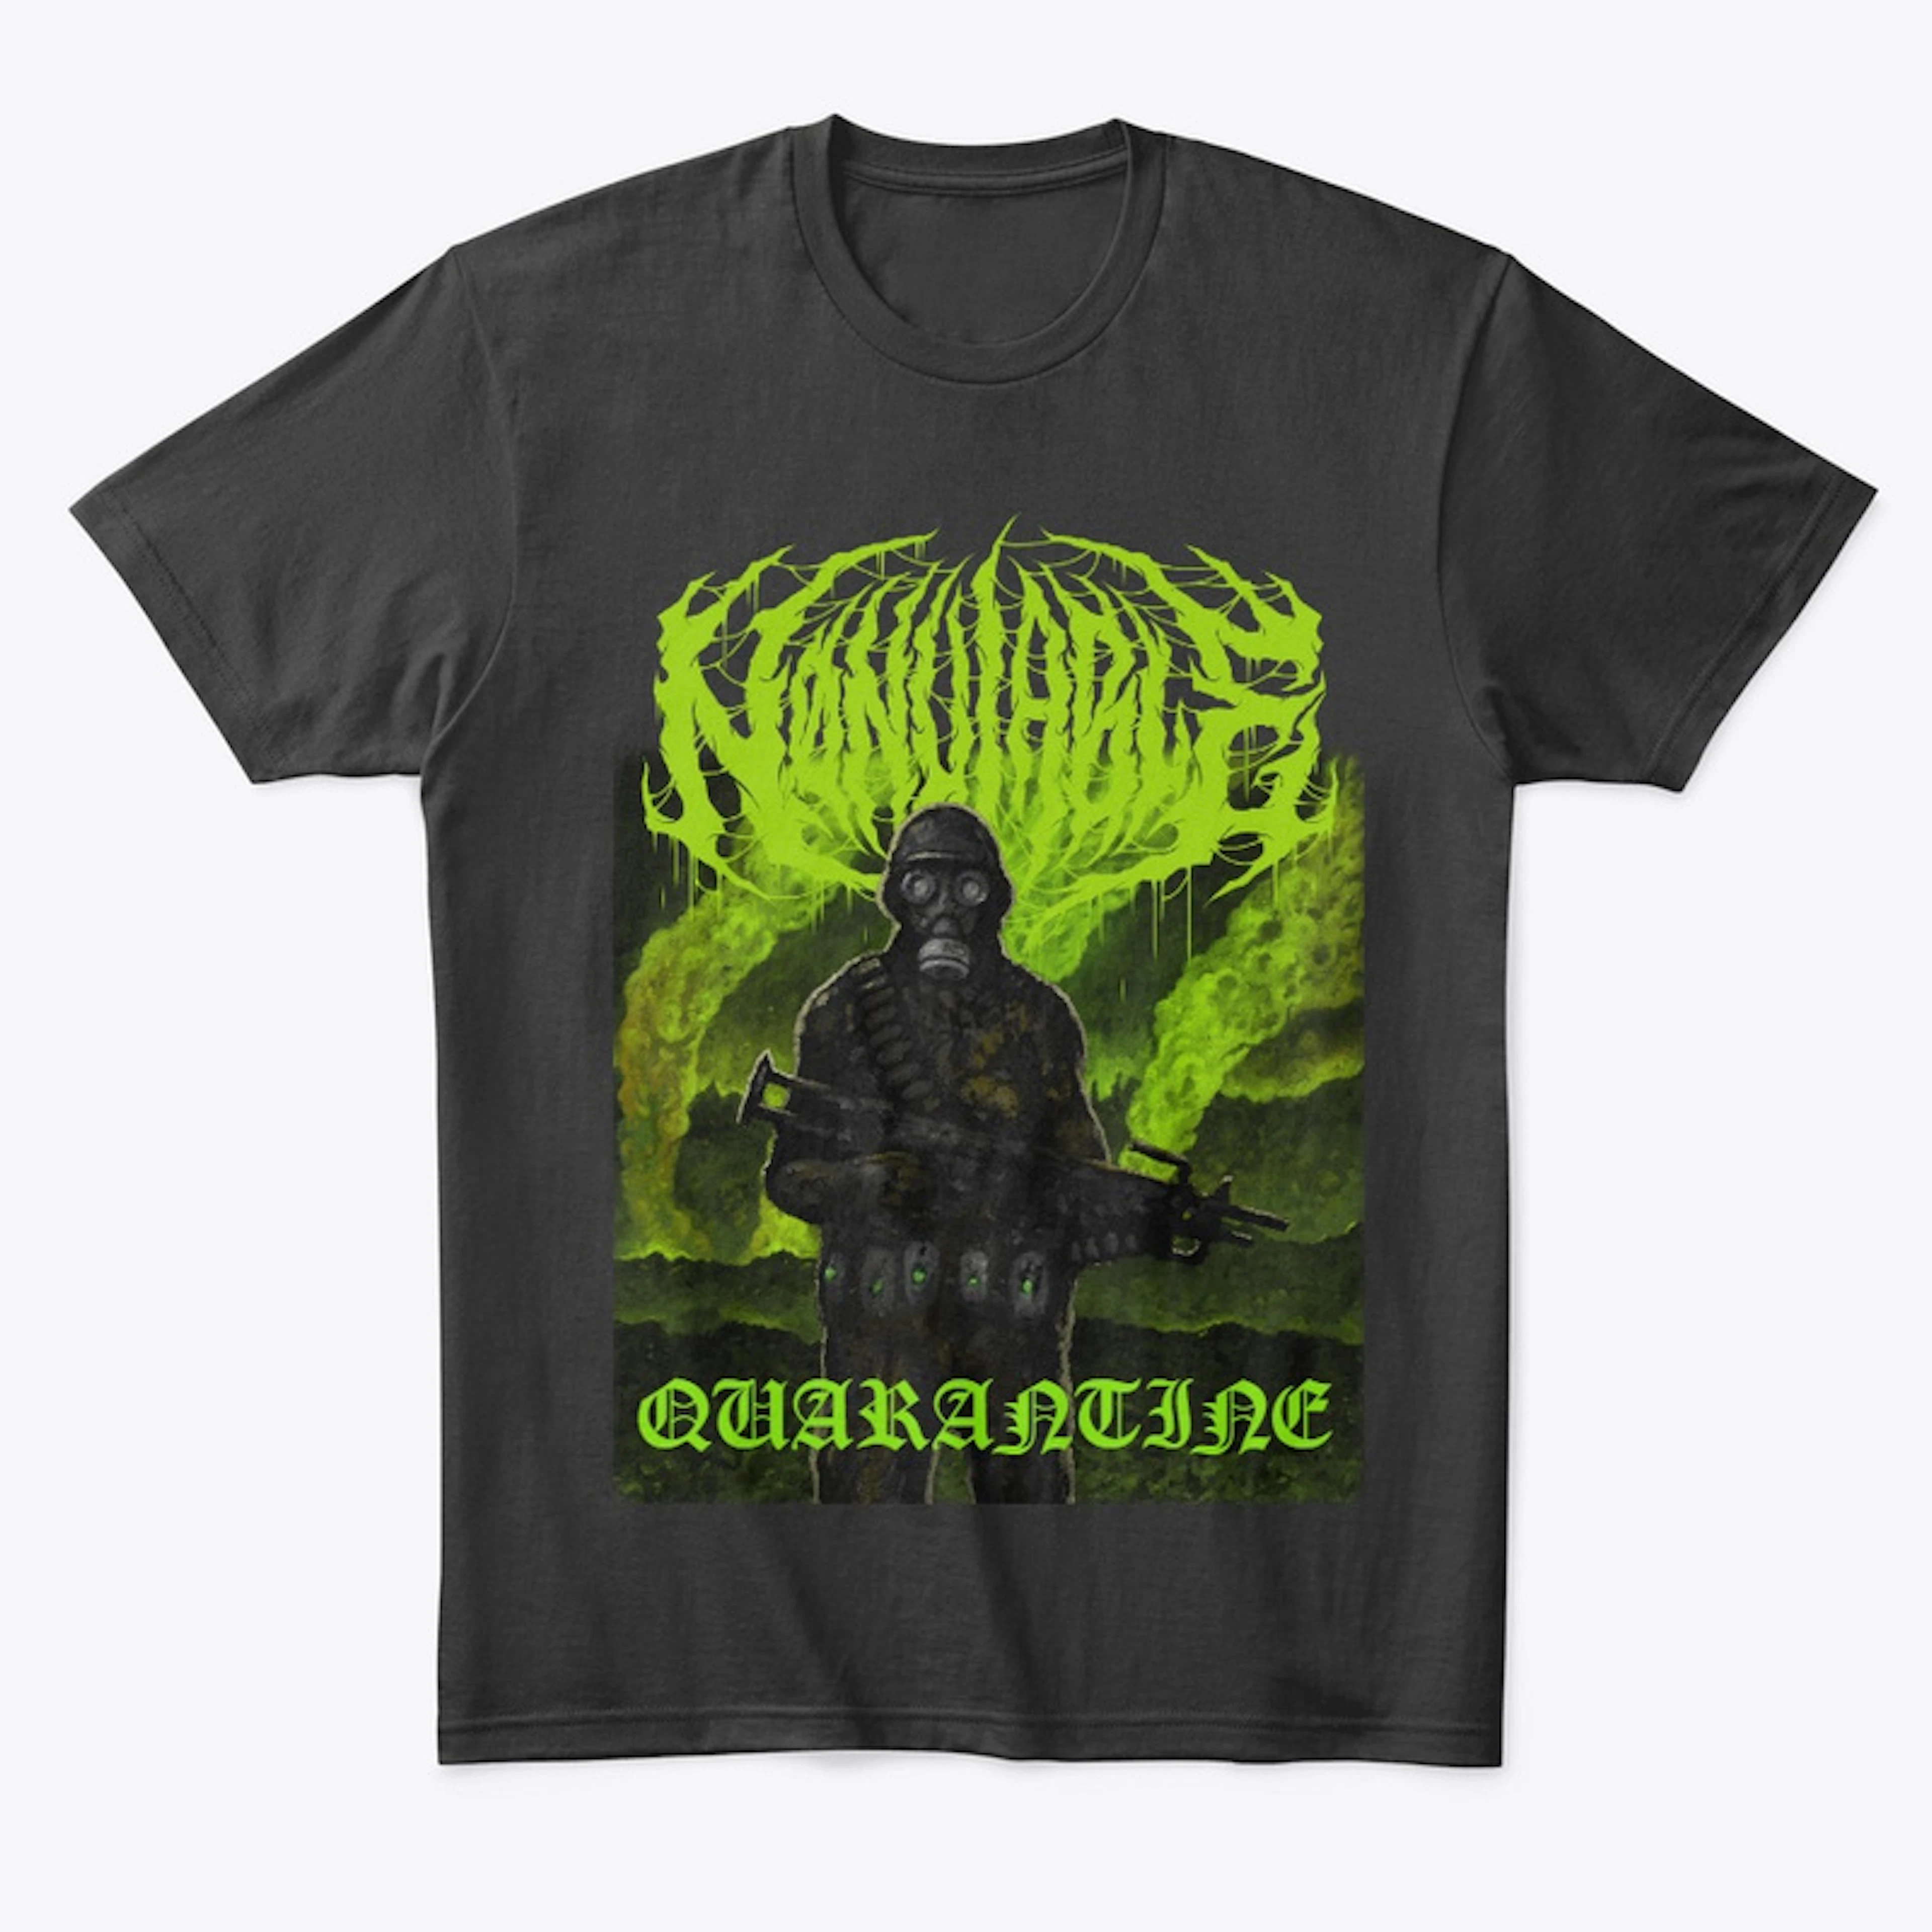 'Quarantine' Shirt